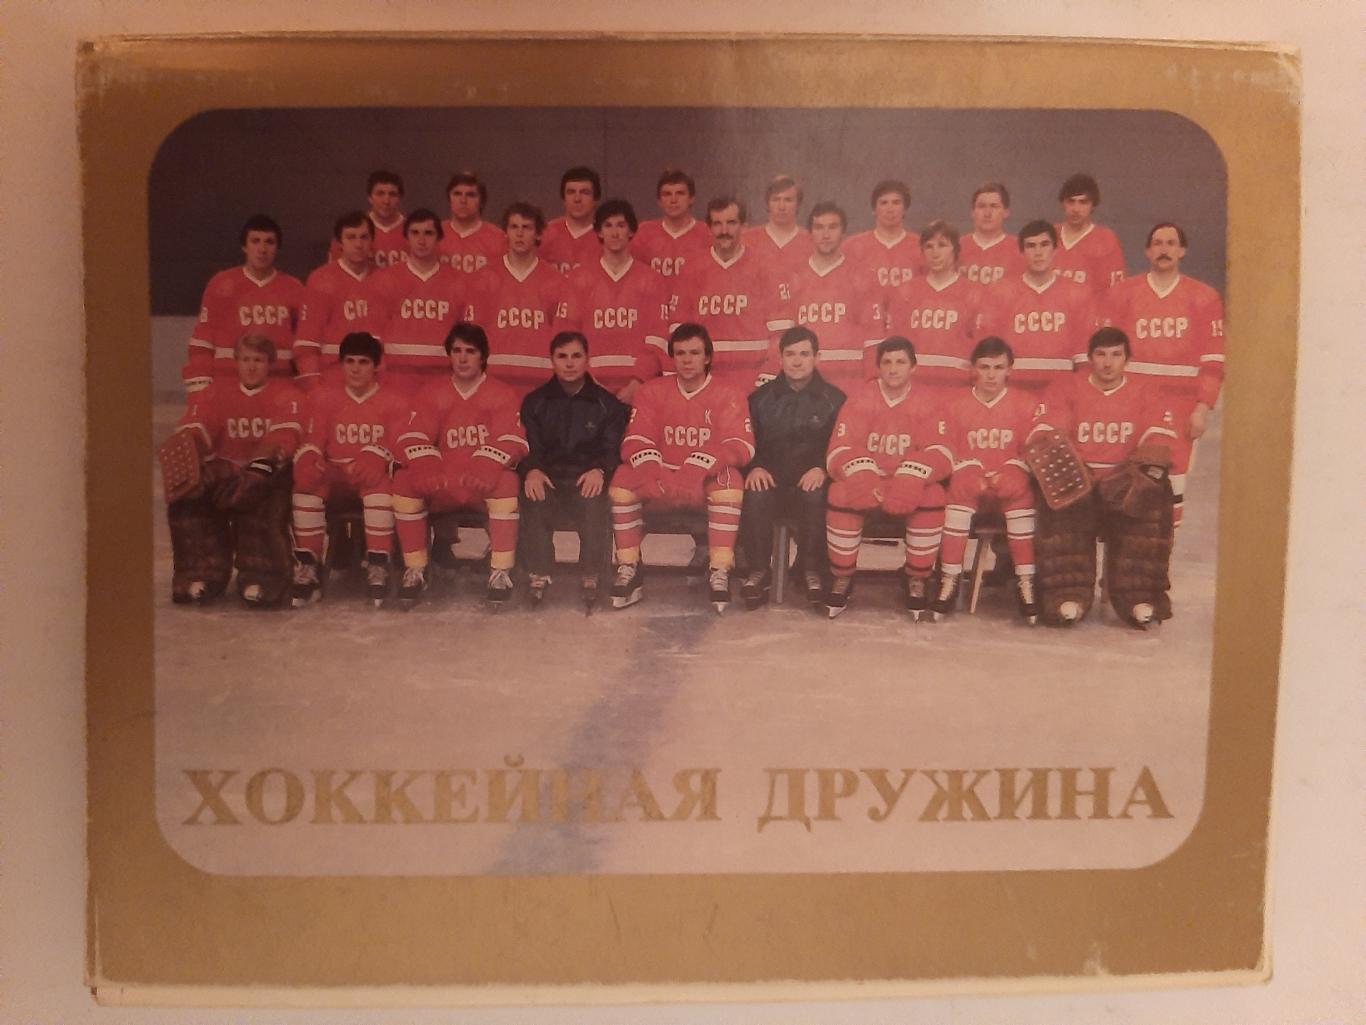 Хоккейная дружина. Сборная СССР по хоккею. Комплект из 24 открыток 1983